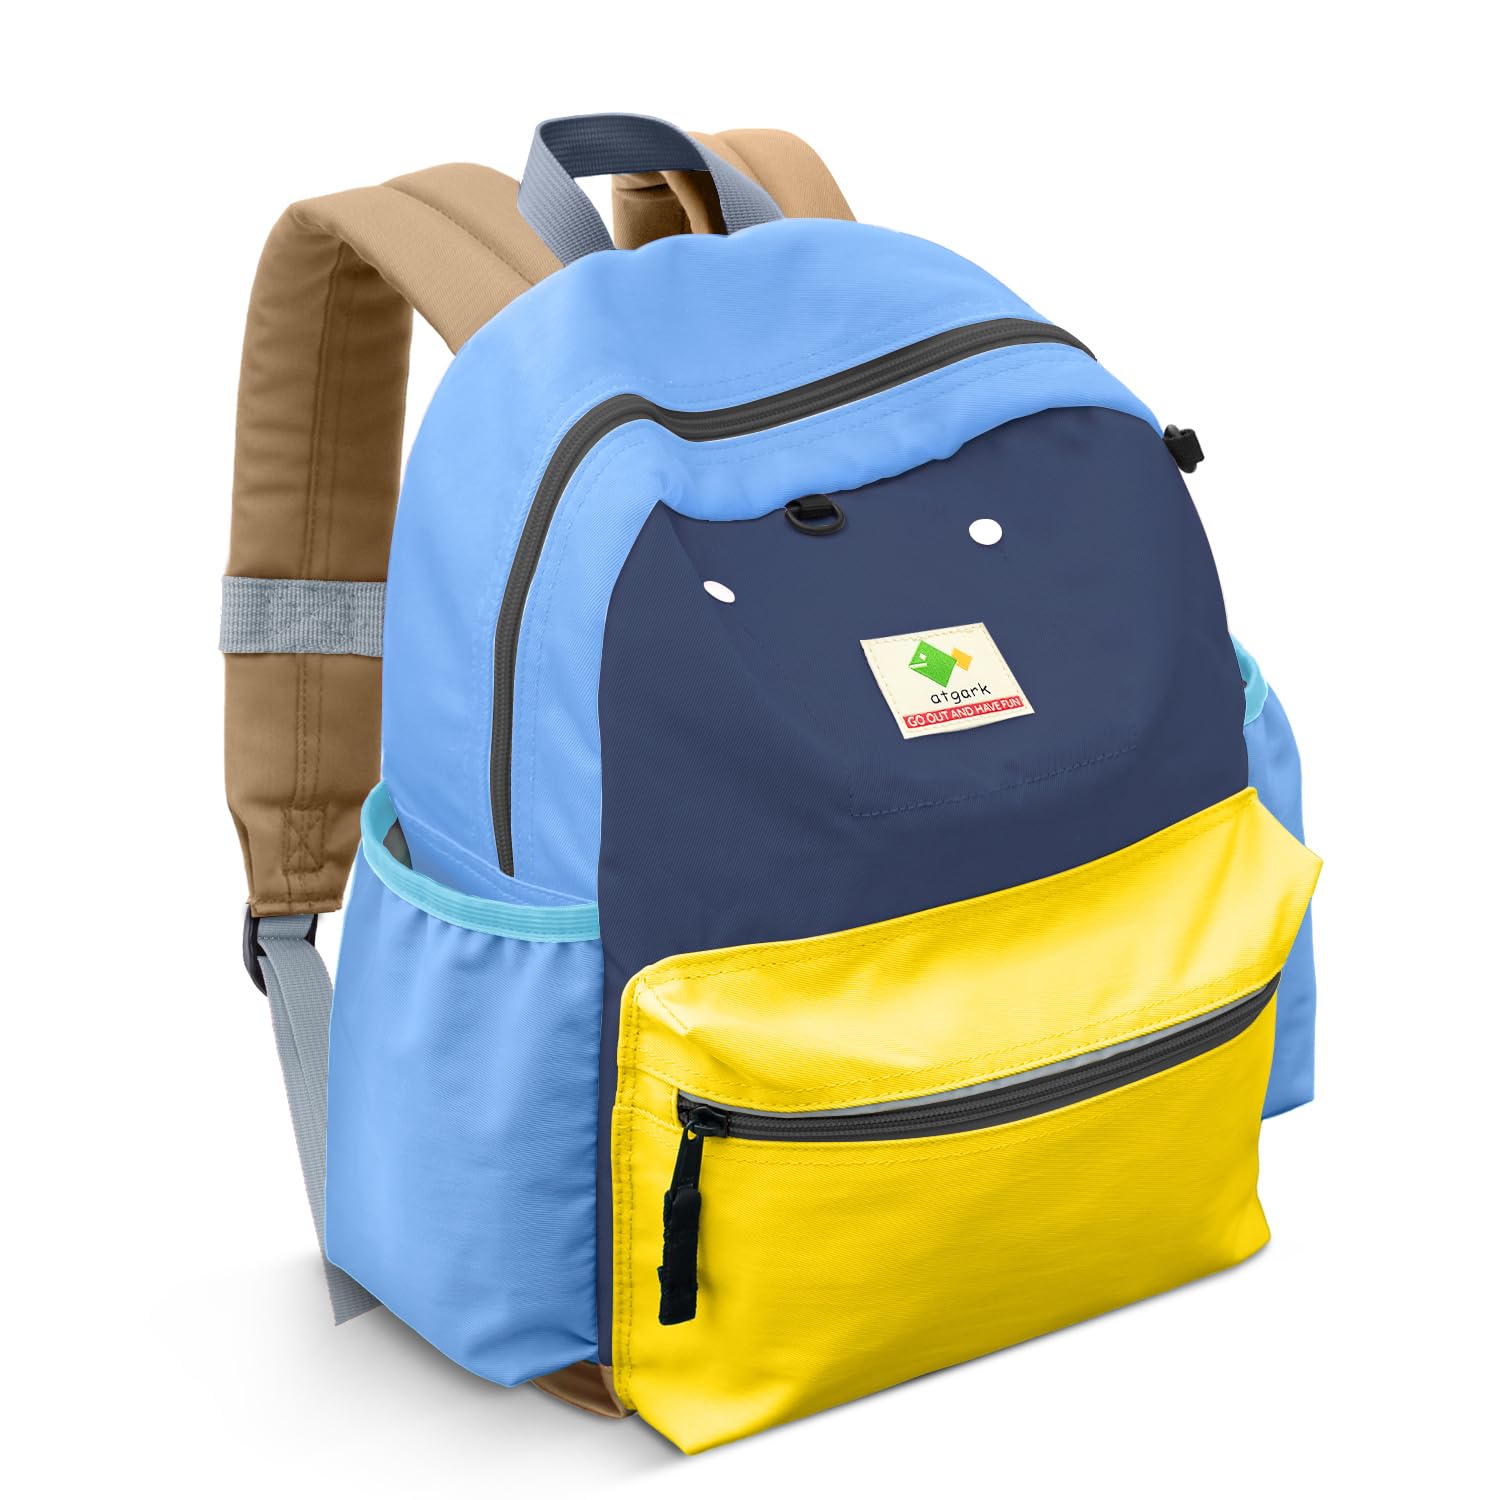 Preschool Toddler Backpack For Boys Girls, Toddler School Mini Backpack For School & Travel, Small Kids Child Backpacks, Preschool Kindergarten Elementary Toddler bag, 12